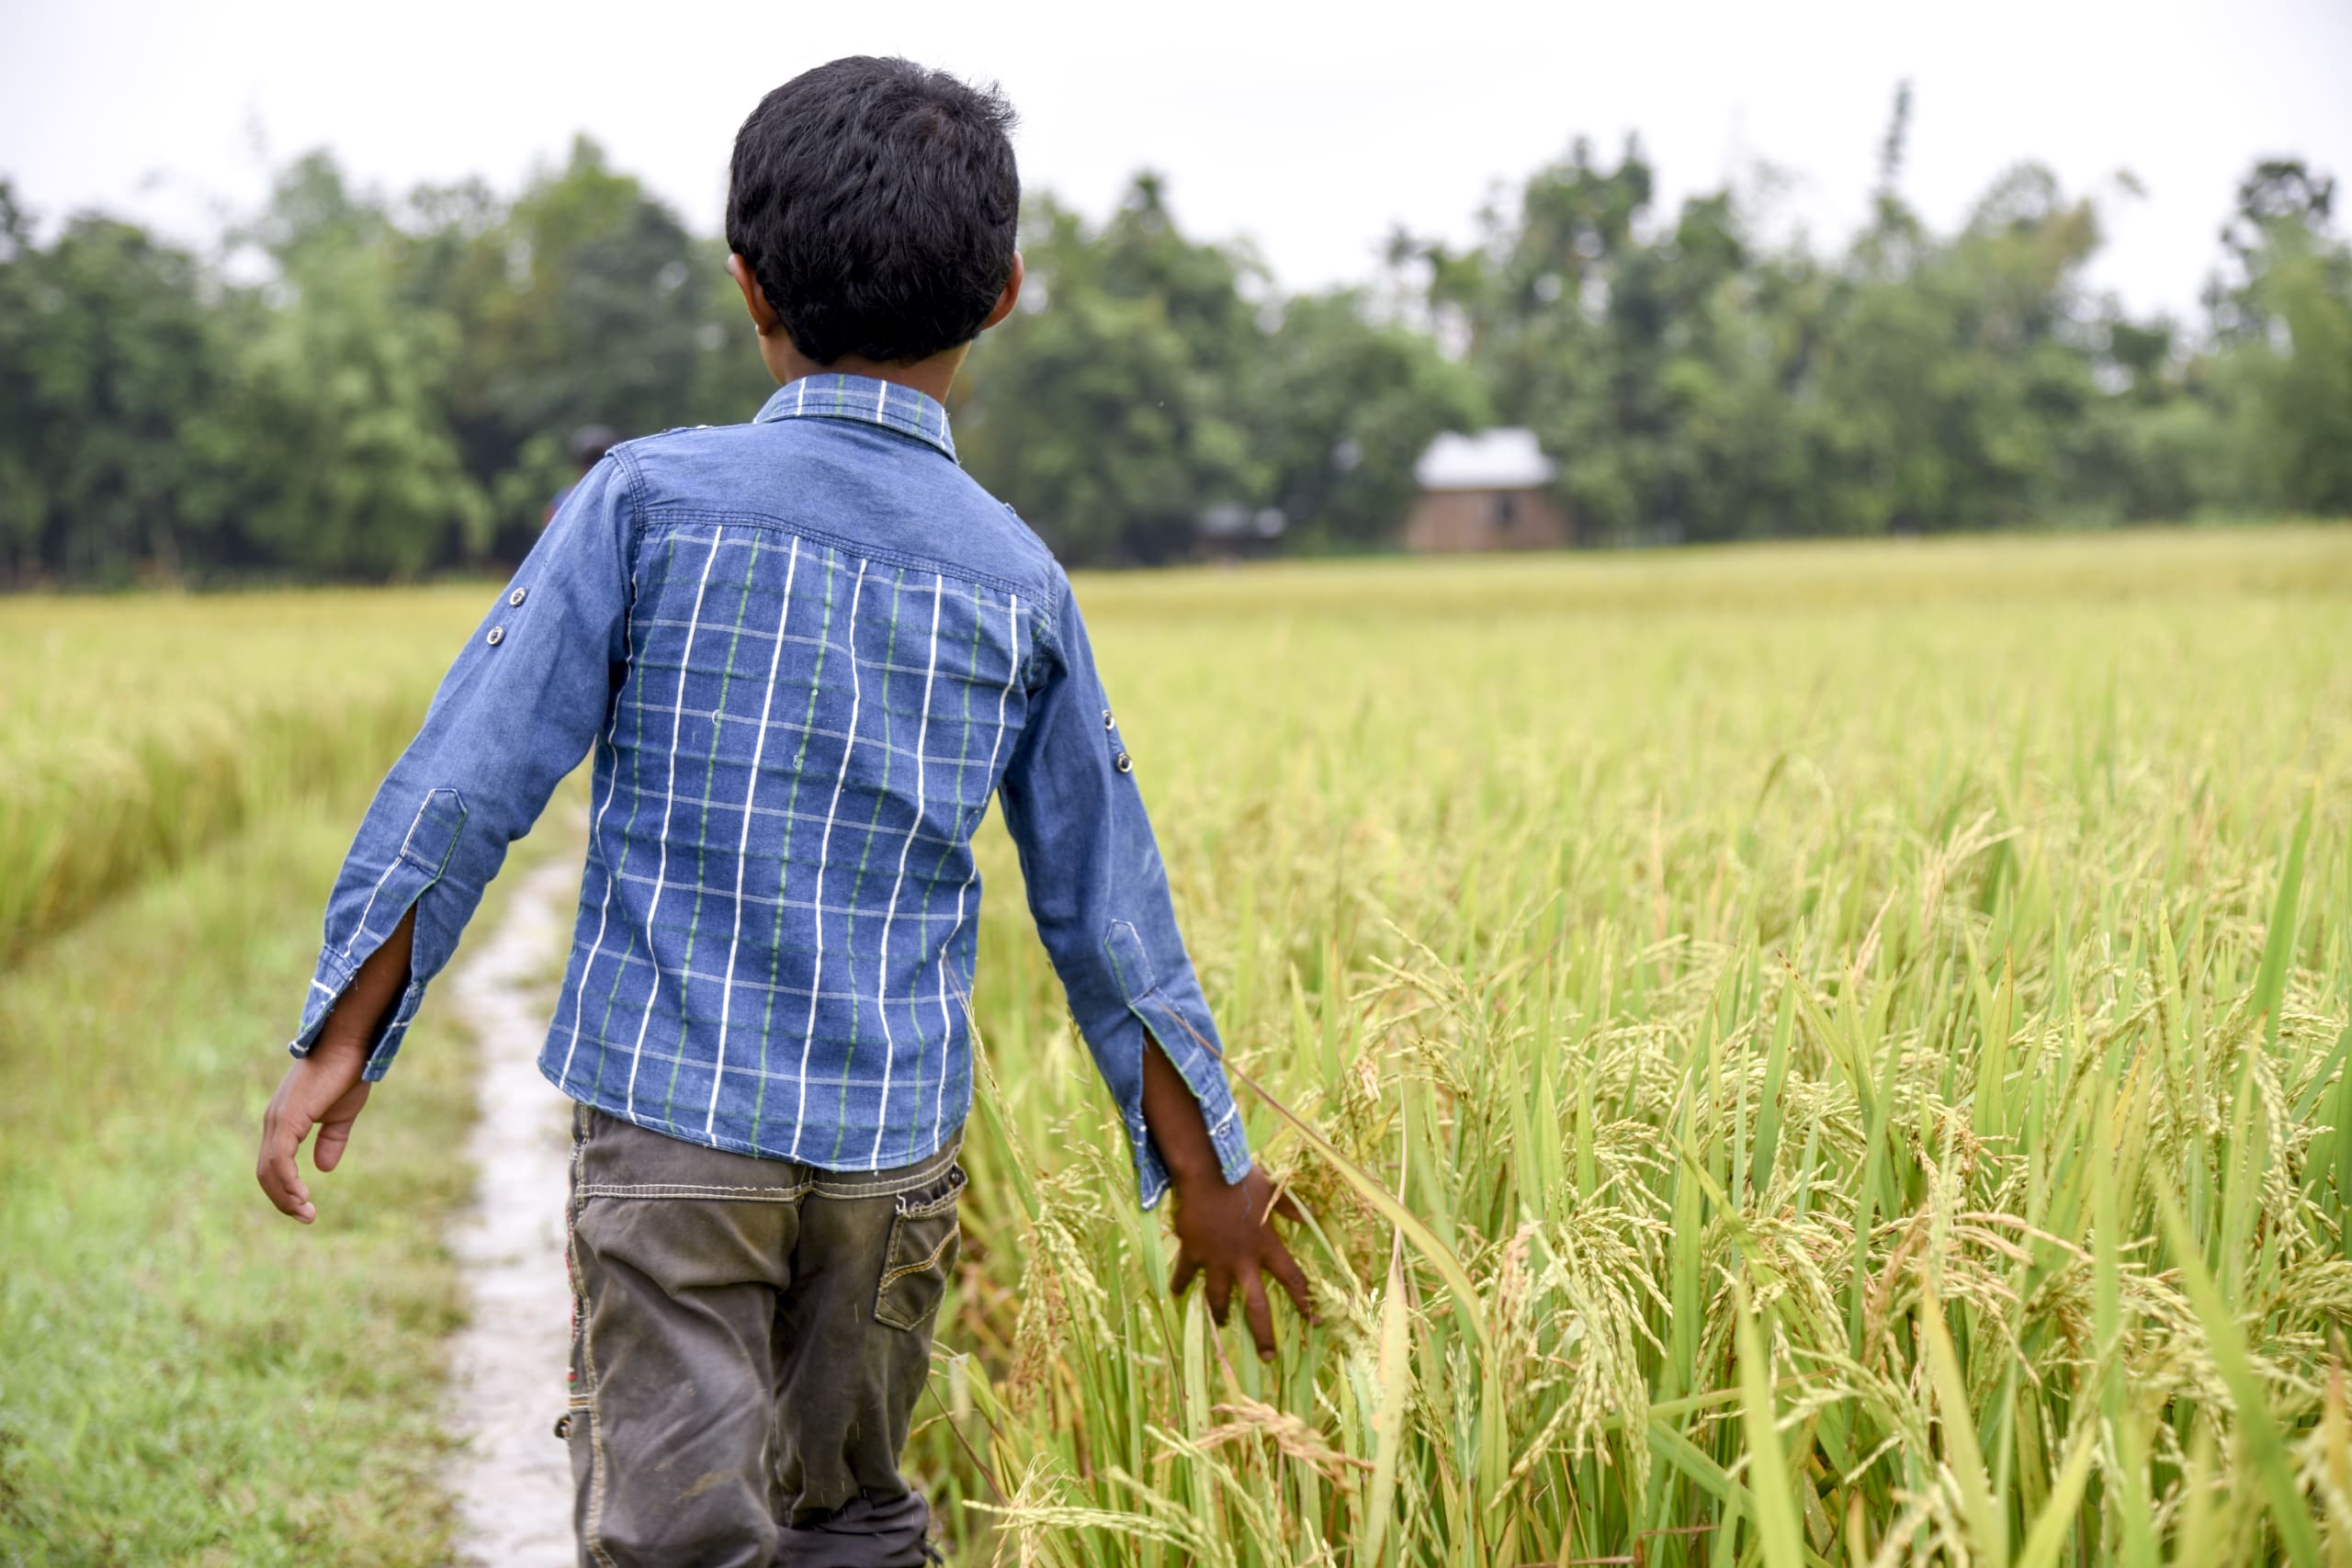 A little boy in plaid walks down a path. He is running his hand through tall grass.